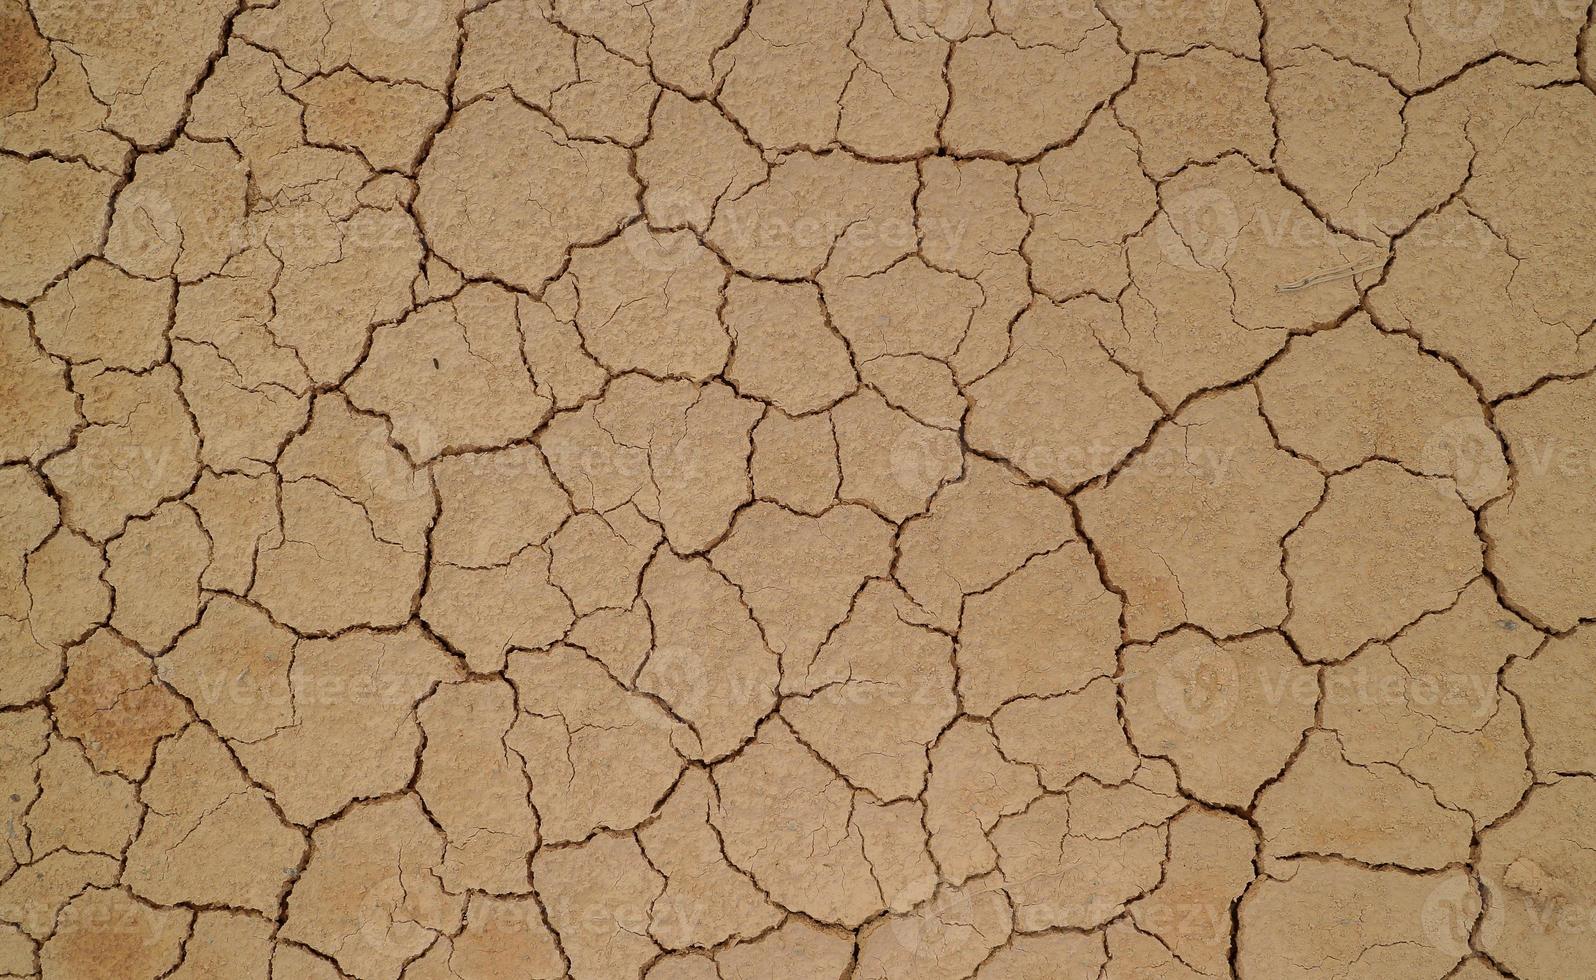 sol fissuré à cause de la sécheresse. la saison sèche fait sécher et fissurer le sol photo